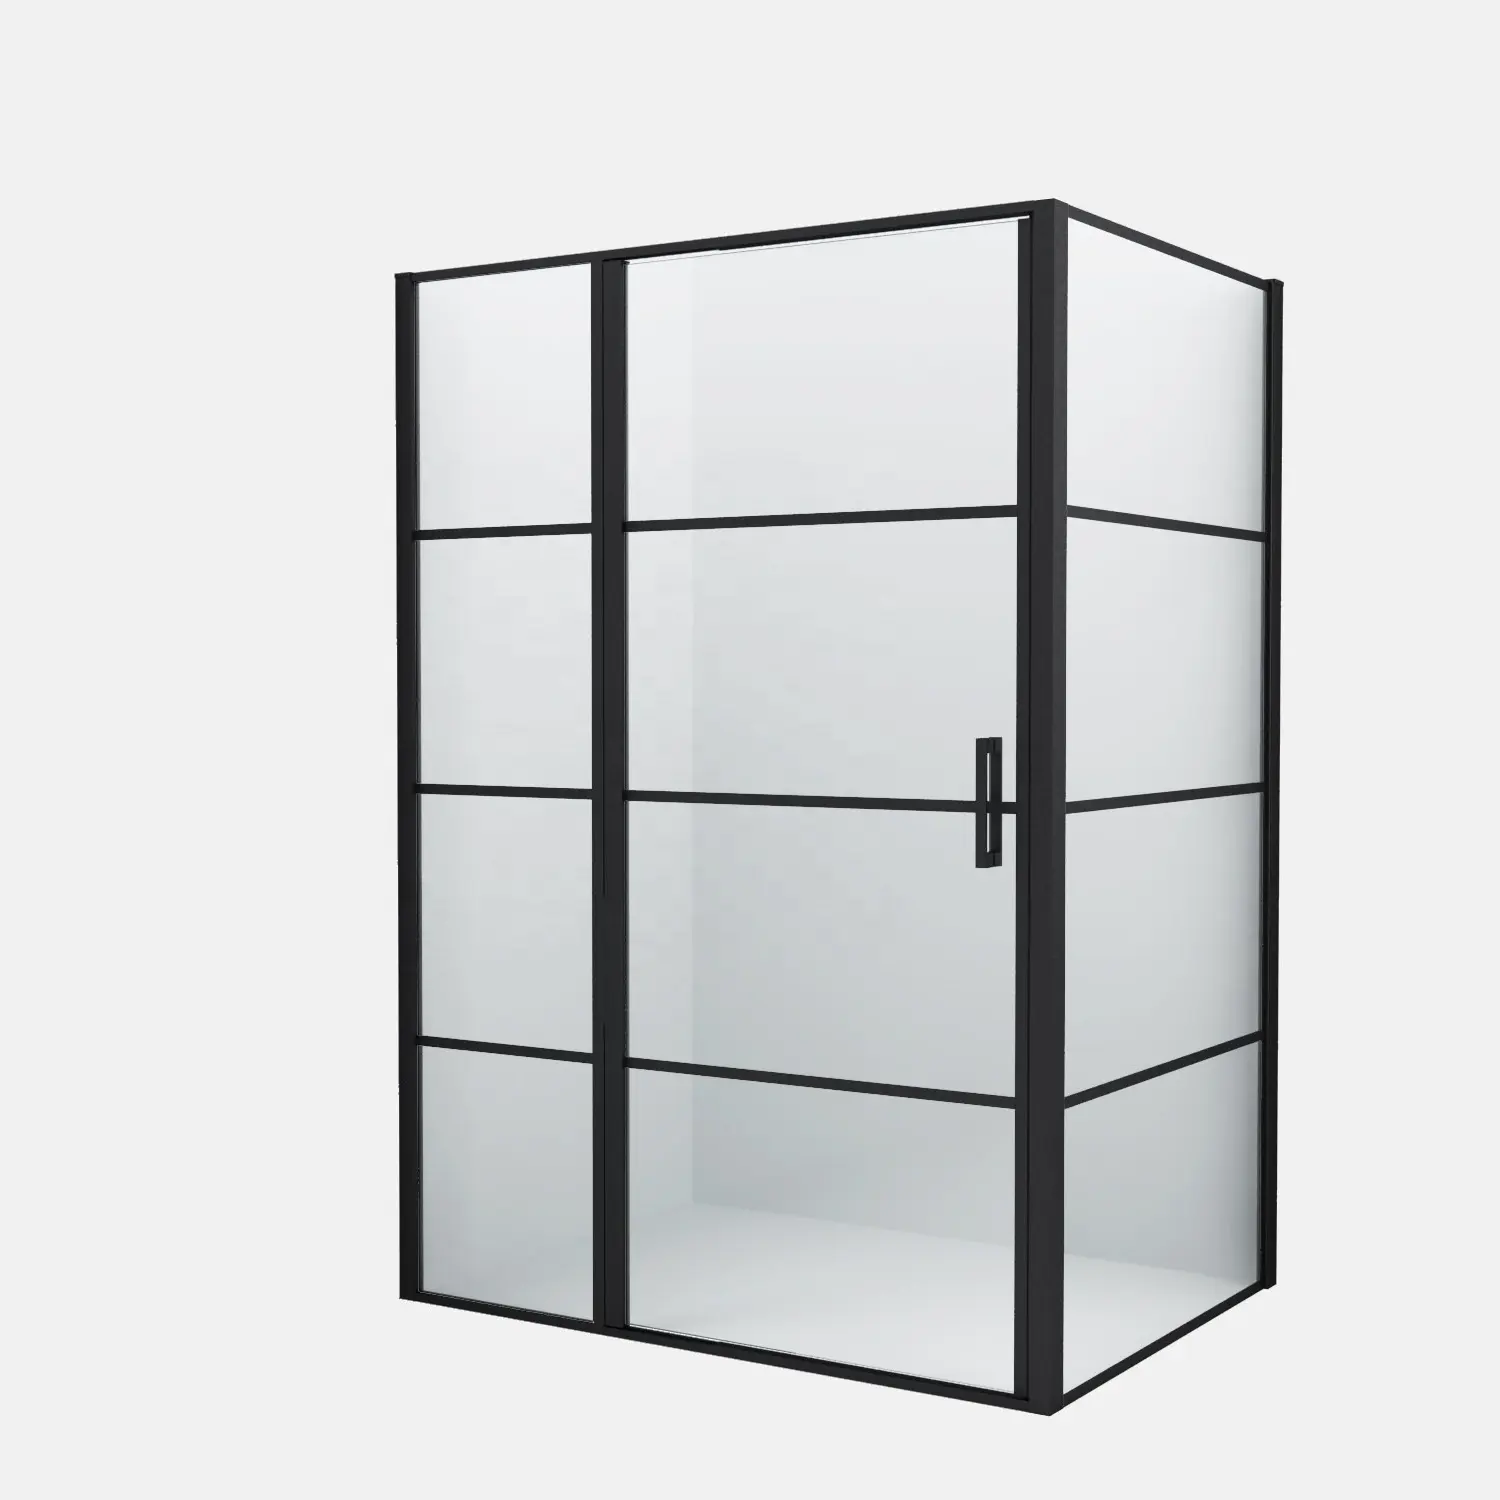 Profil en aluminium noir pour salle de bain, cabine de douche à 3 côtés, Pivot de bain en verre trempé, cabine de douche, porte